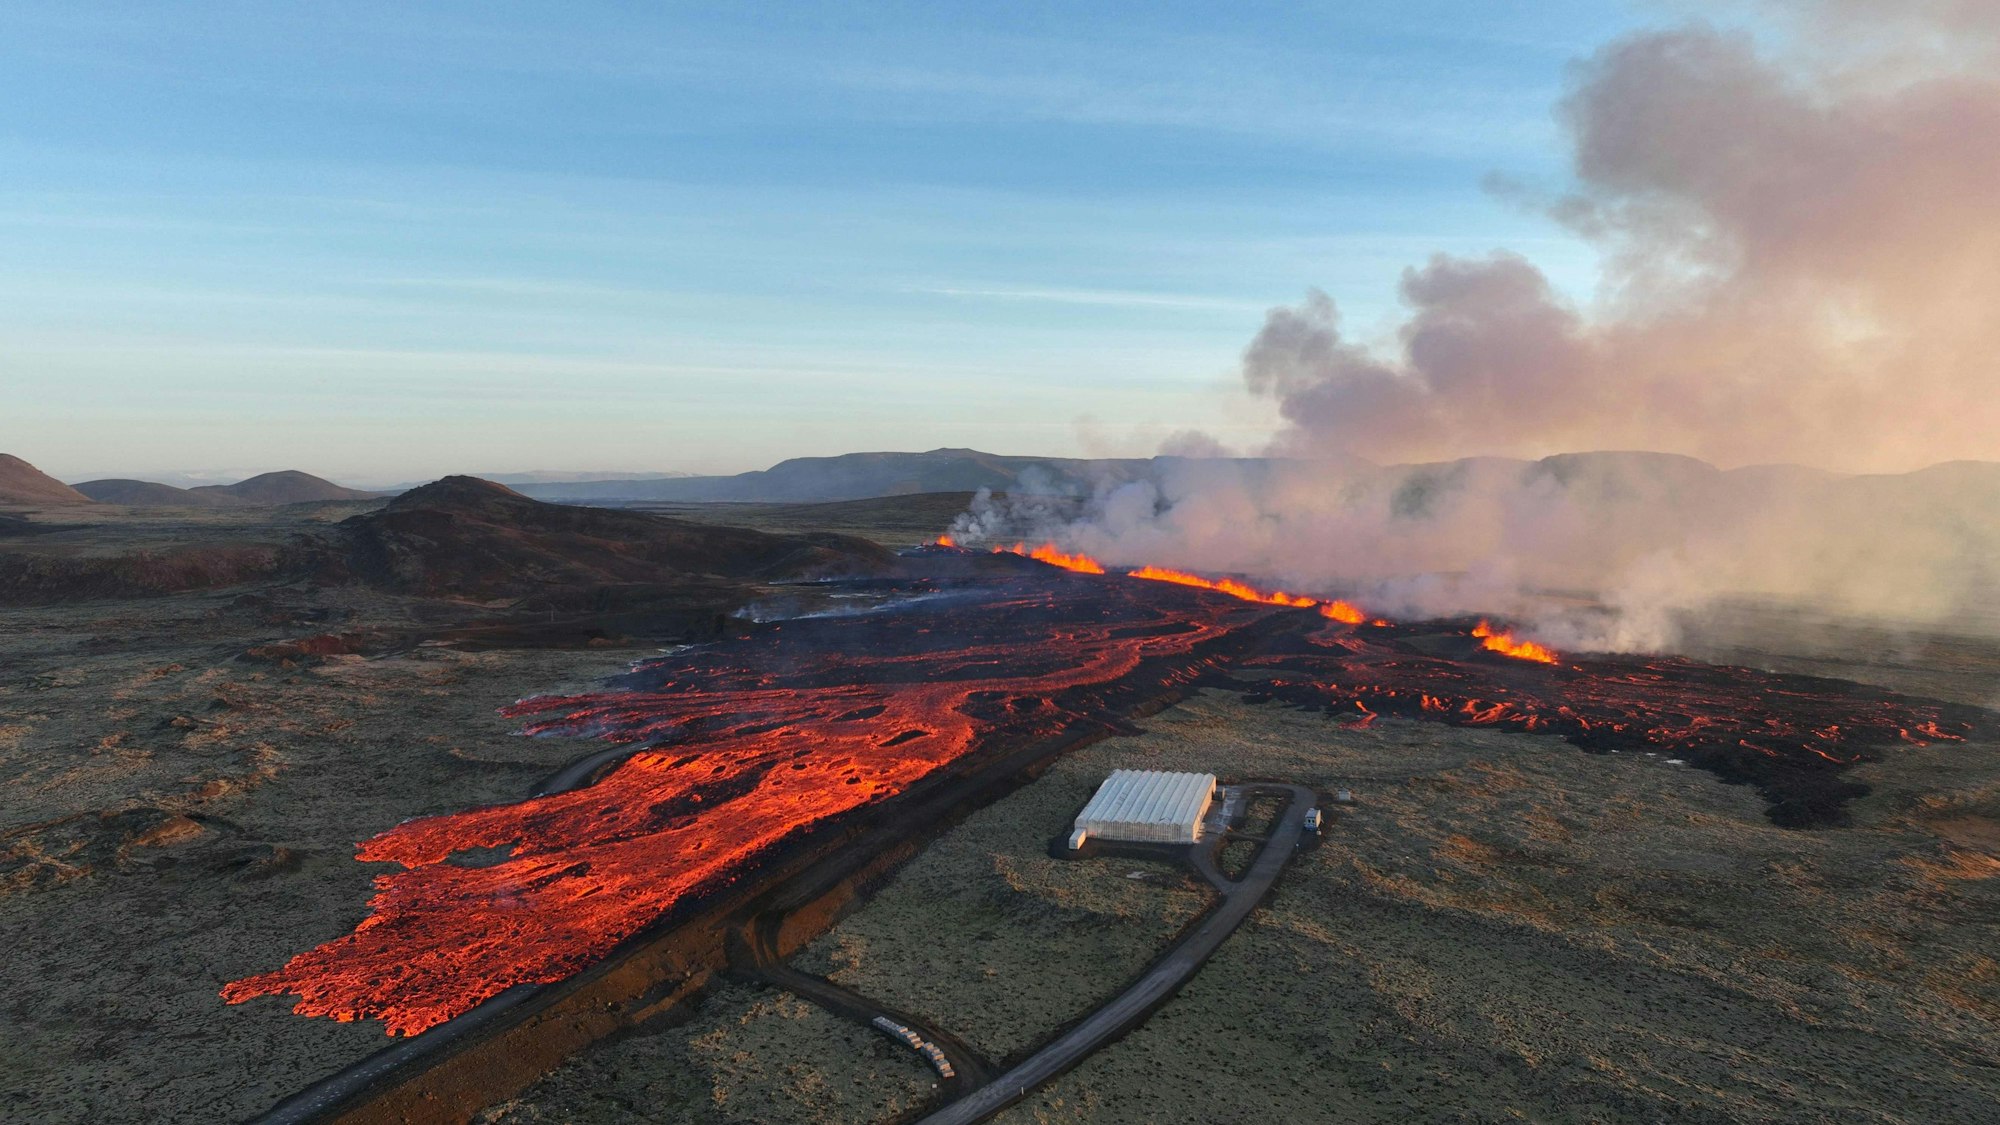 Die Lava bahnt sich nach einem verheerenden Vulkanausbruch auf der Reykjanes-Halbinsel ihren Weg in Richtung des Ortes Grindavík. Zwei Erdspalten waren am Sonntag plötzlich aufgerissen.